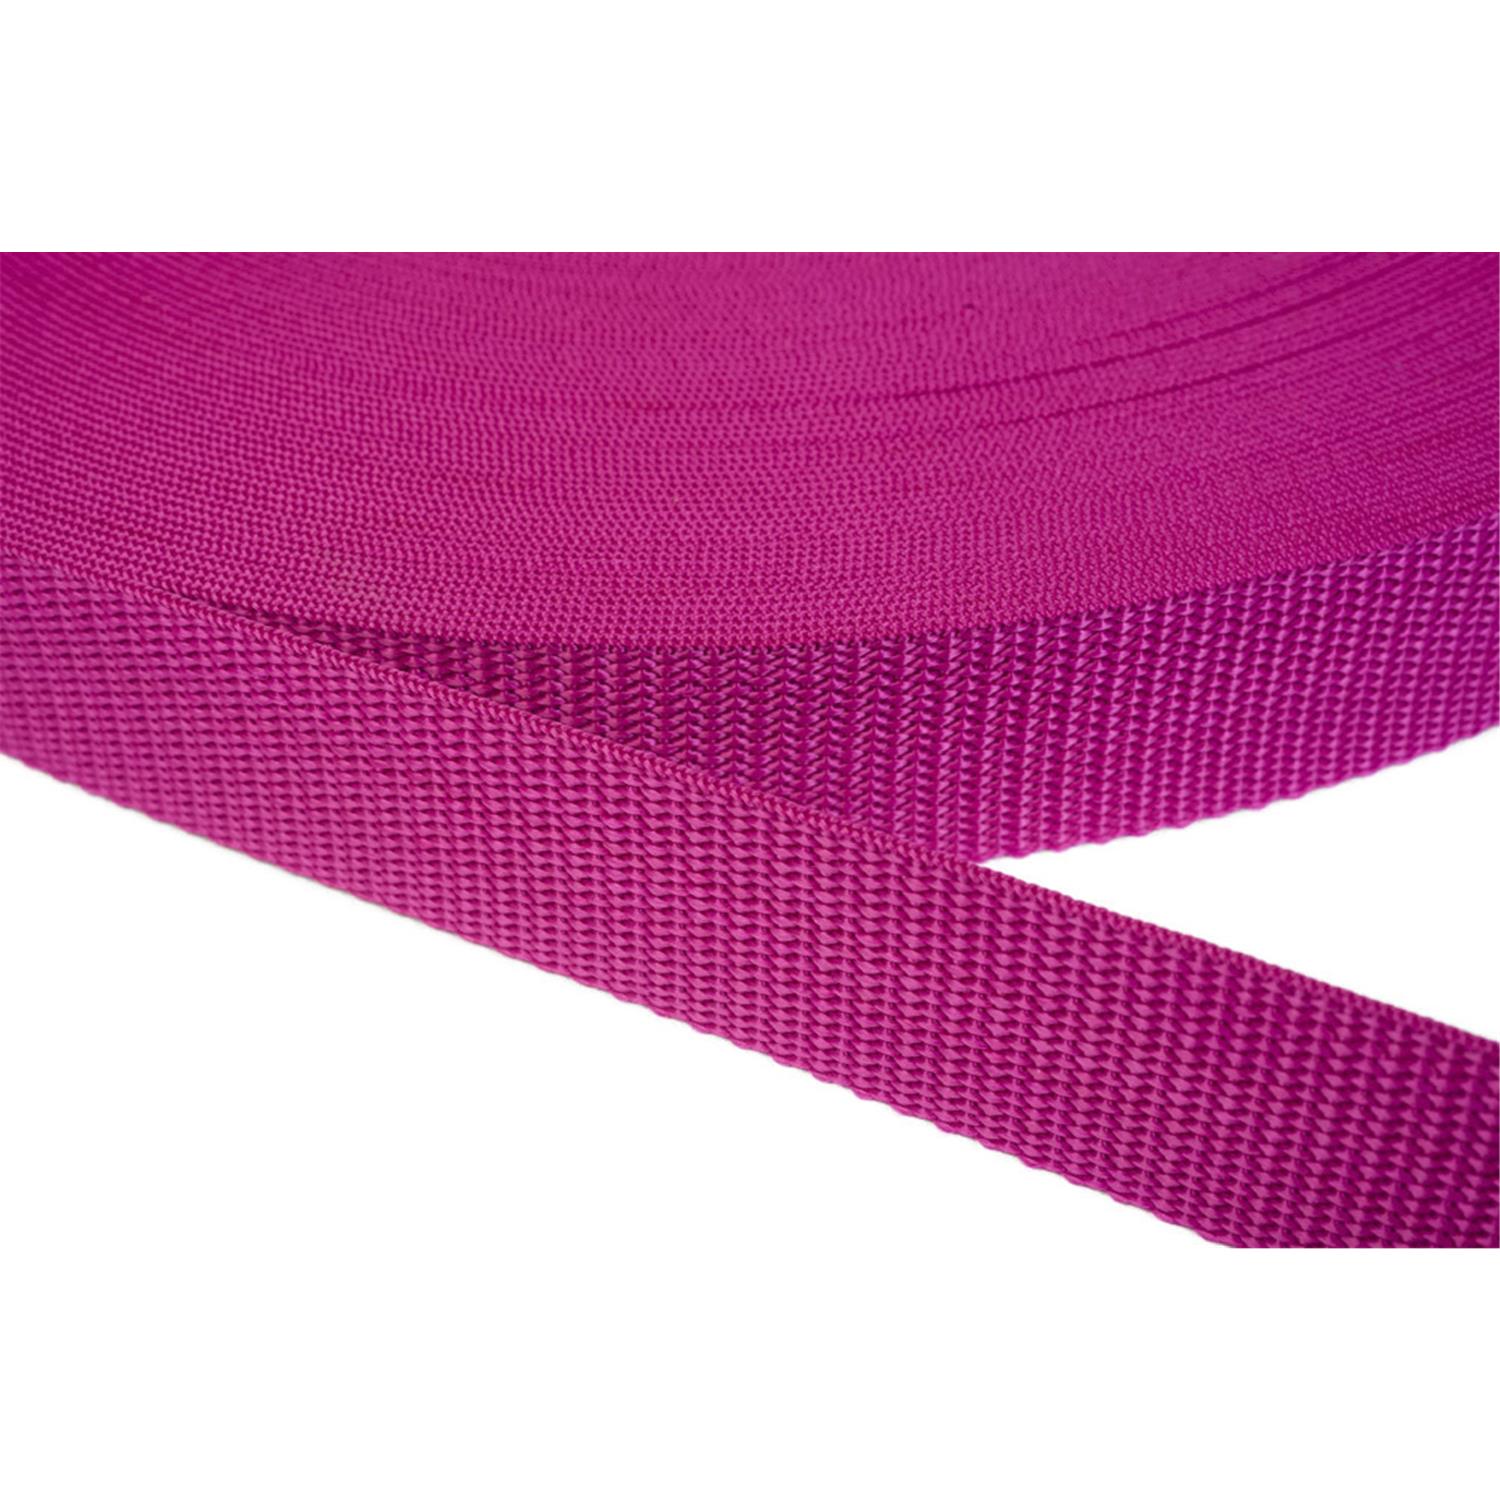 Gurtband 15mm breit aus Polypropylen in 41 Farben 17 - dunkles magenta 50 Meter